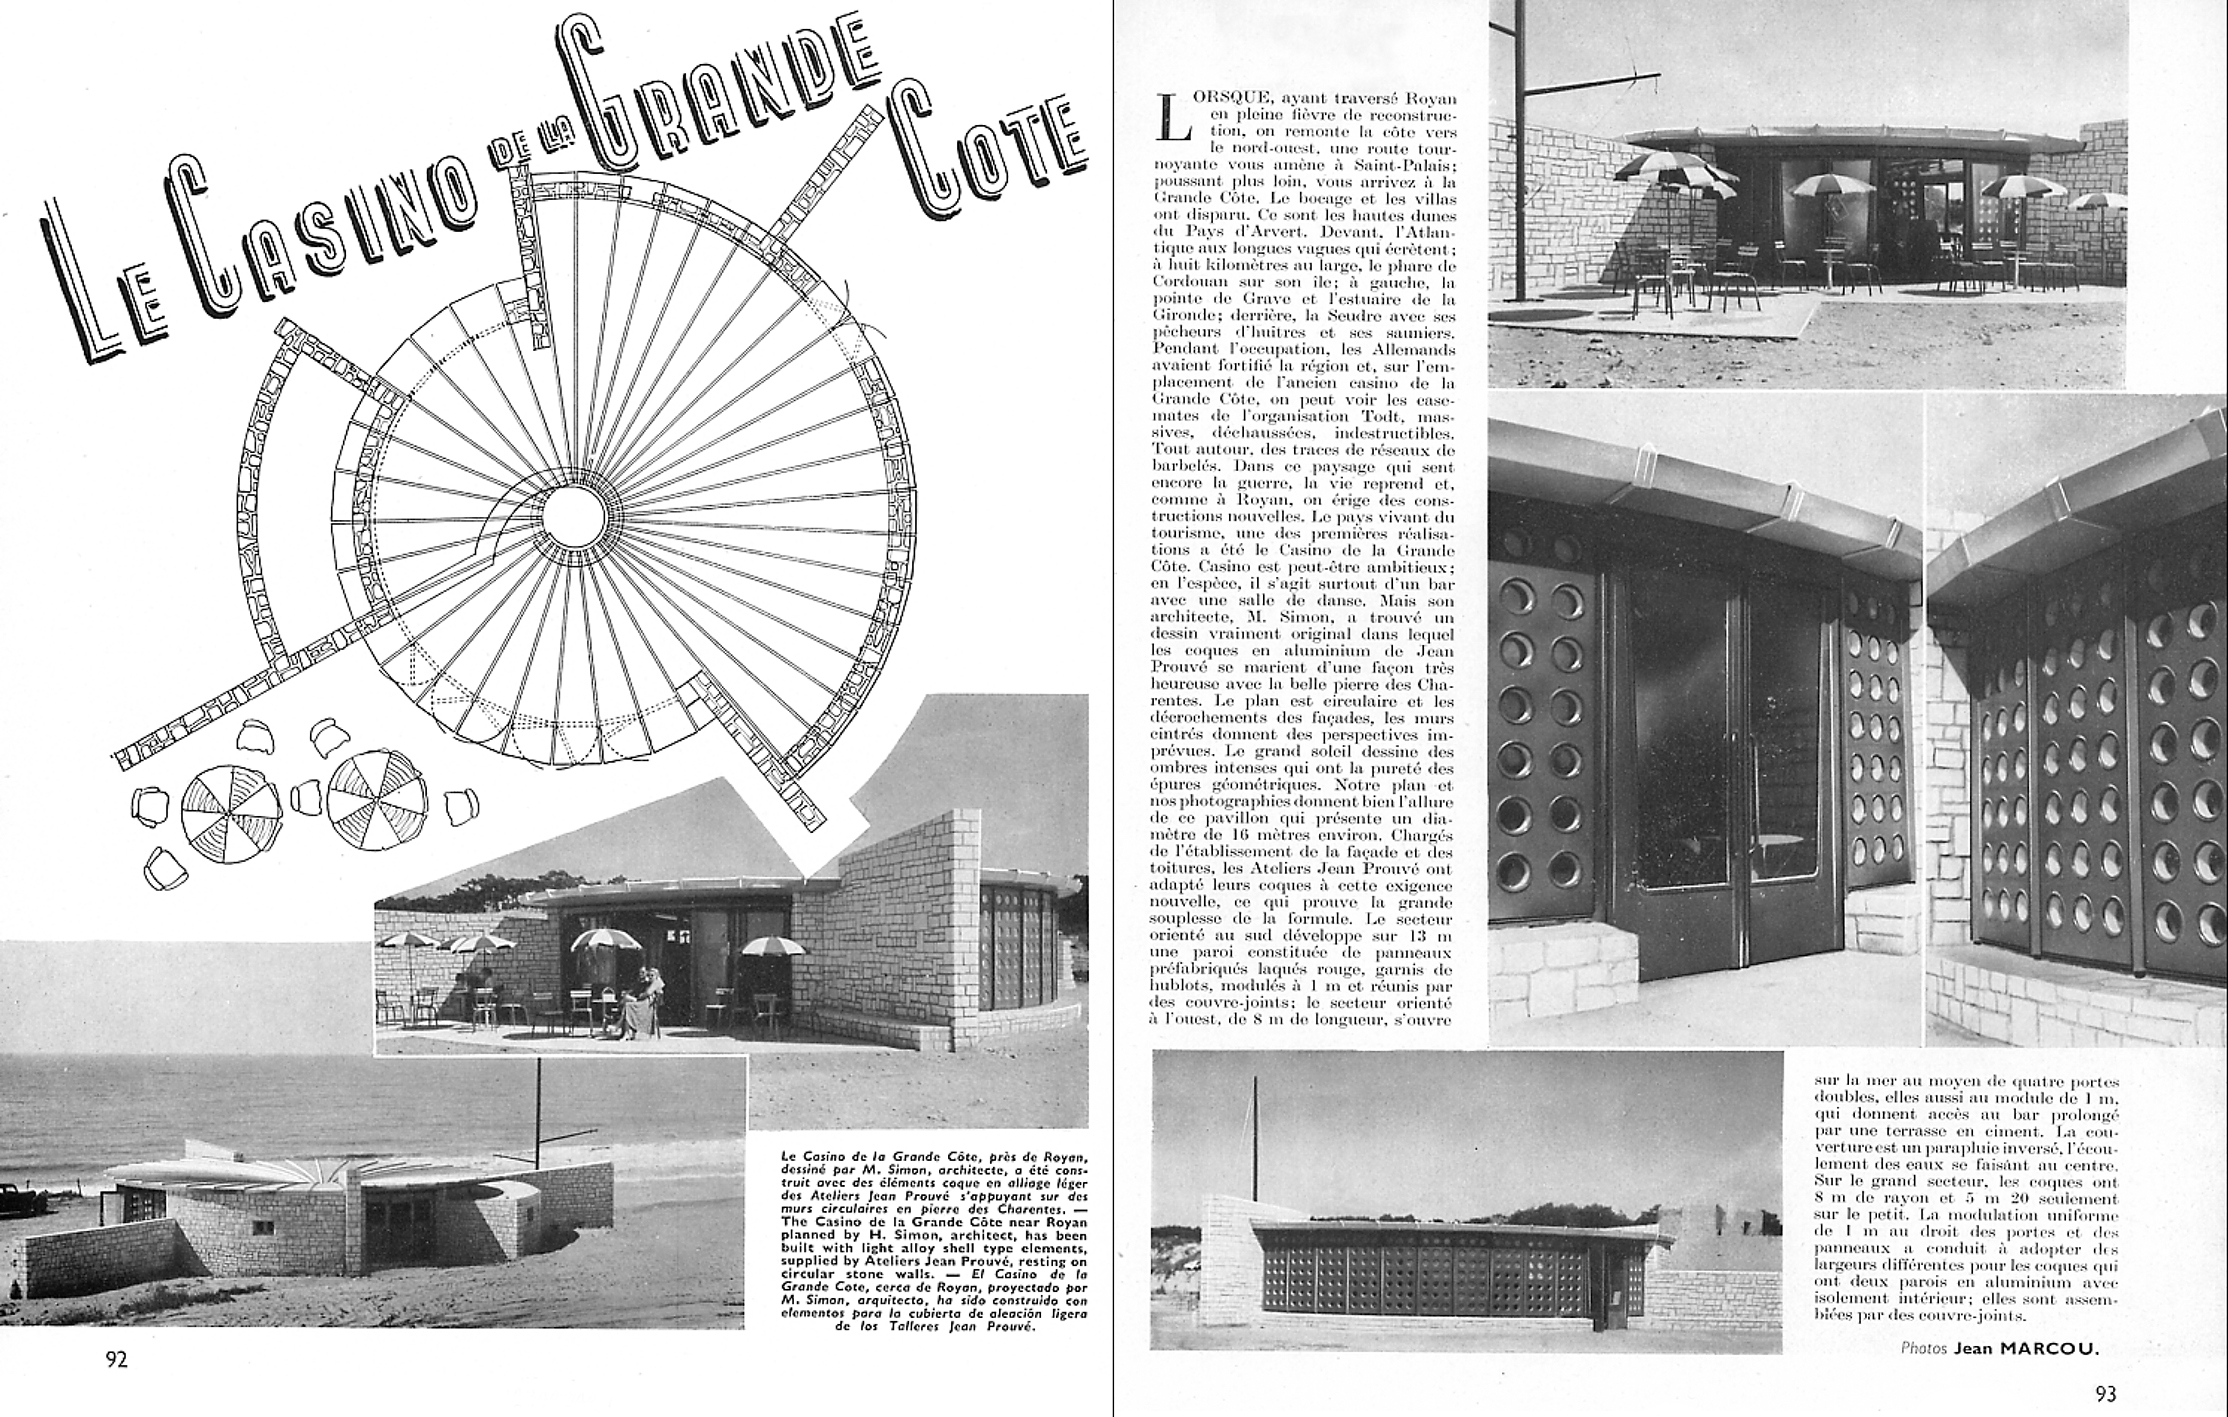 Press article, undated. Casino de la Grande Côte, Royan (architect L. Simon, 1951). Facade panels designed by Jean Prouvé.